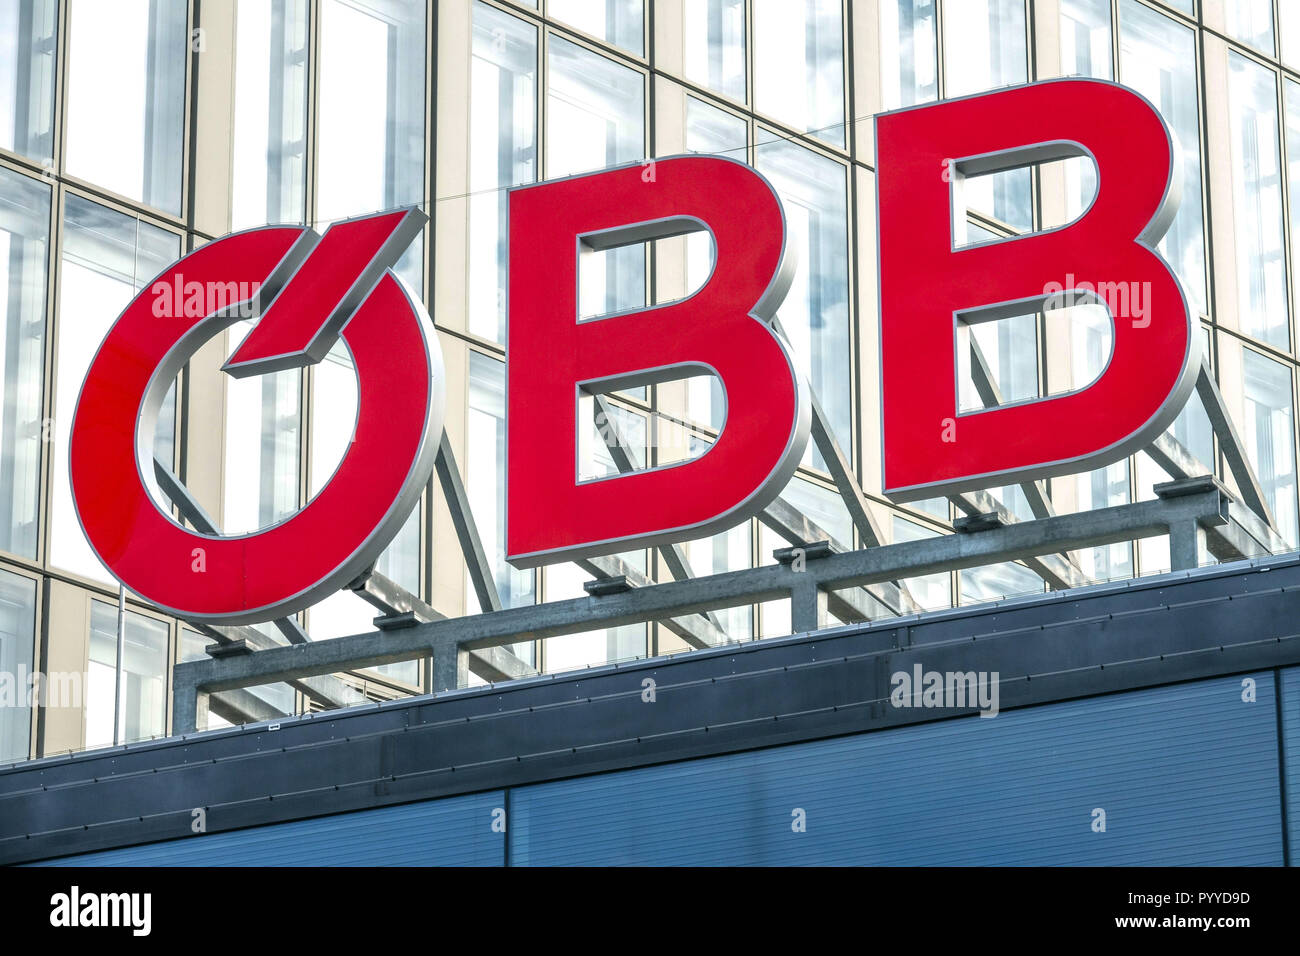 OBB logo, Vienna Austria Stock Photo